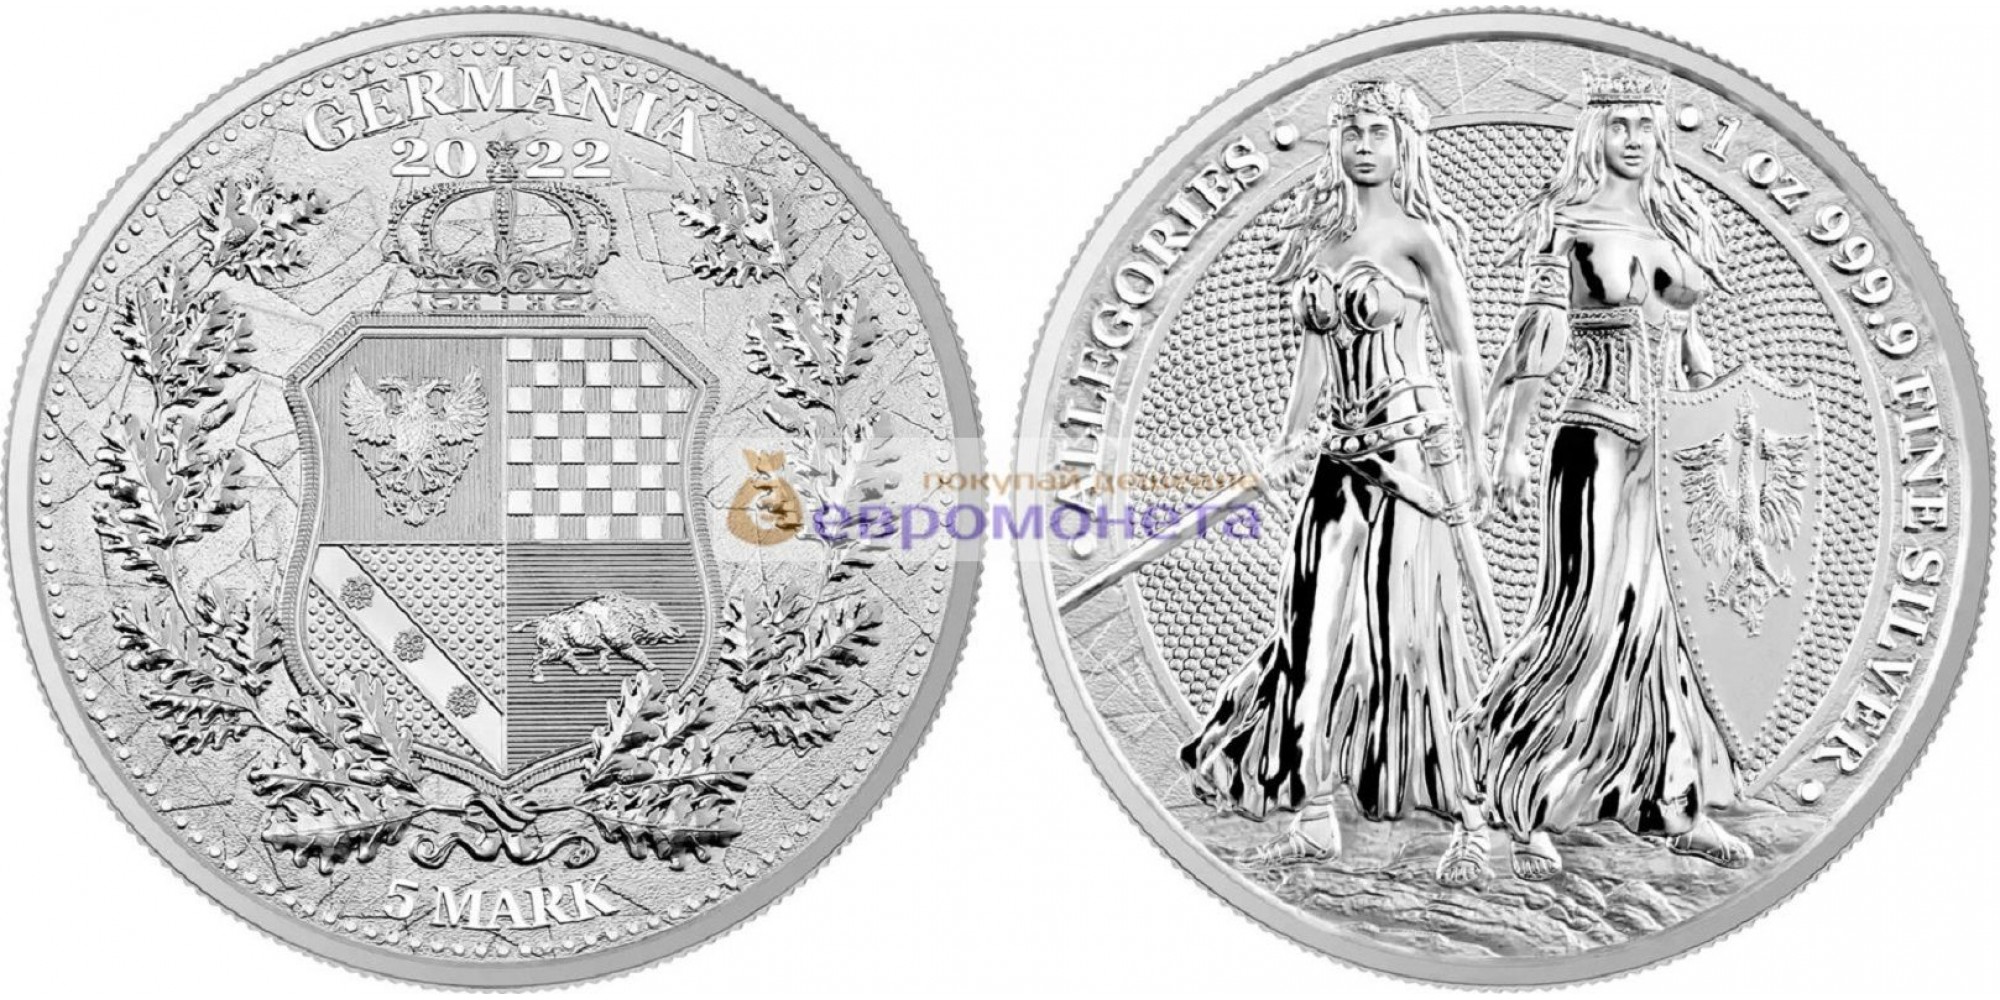 Аллегории: Польша и Германия 5 марок 2022 год 1 унция серебра 9999 пробы. Germania Mint тираж 25 000 шт.